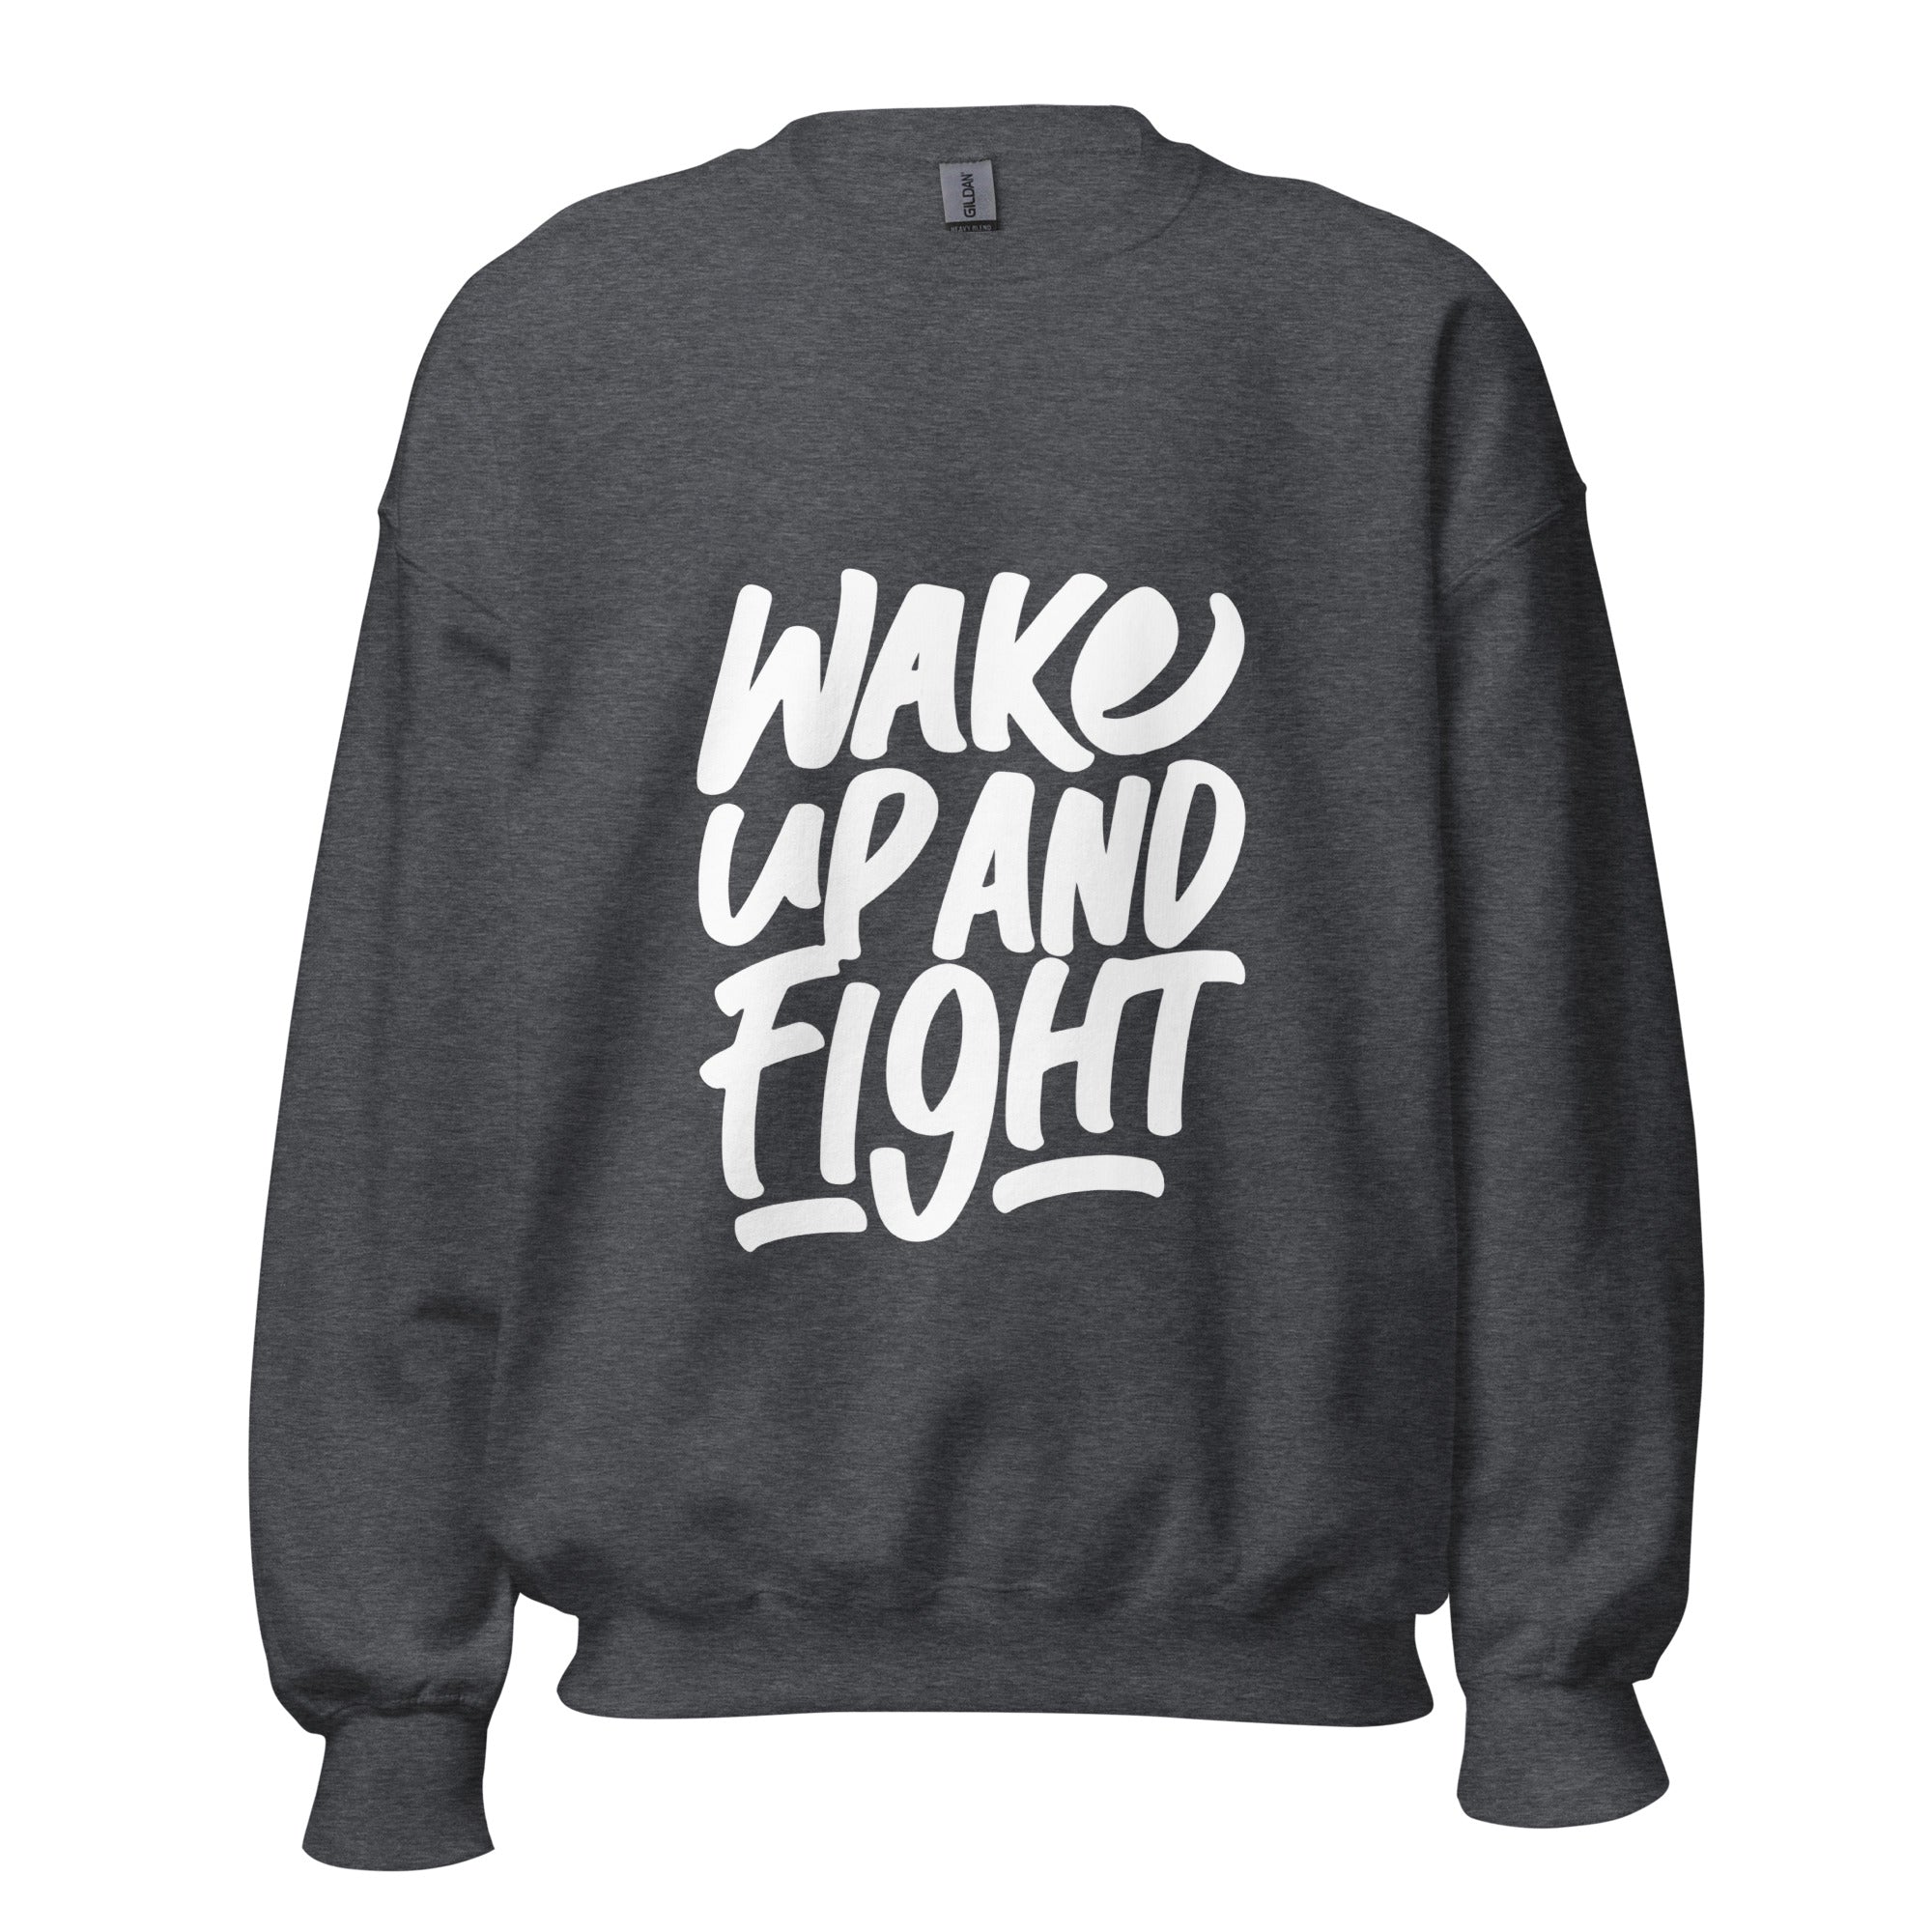 Wake up Sweatshirt for men